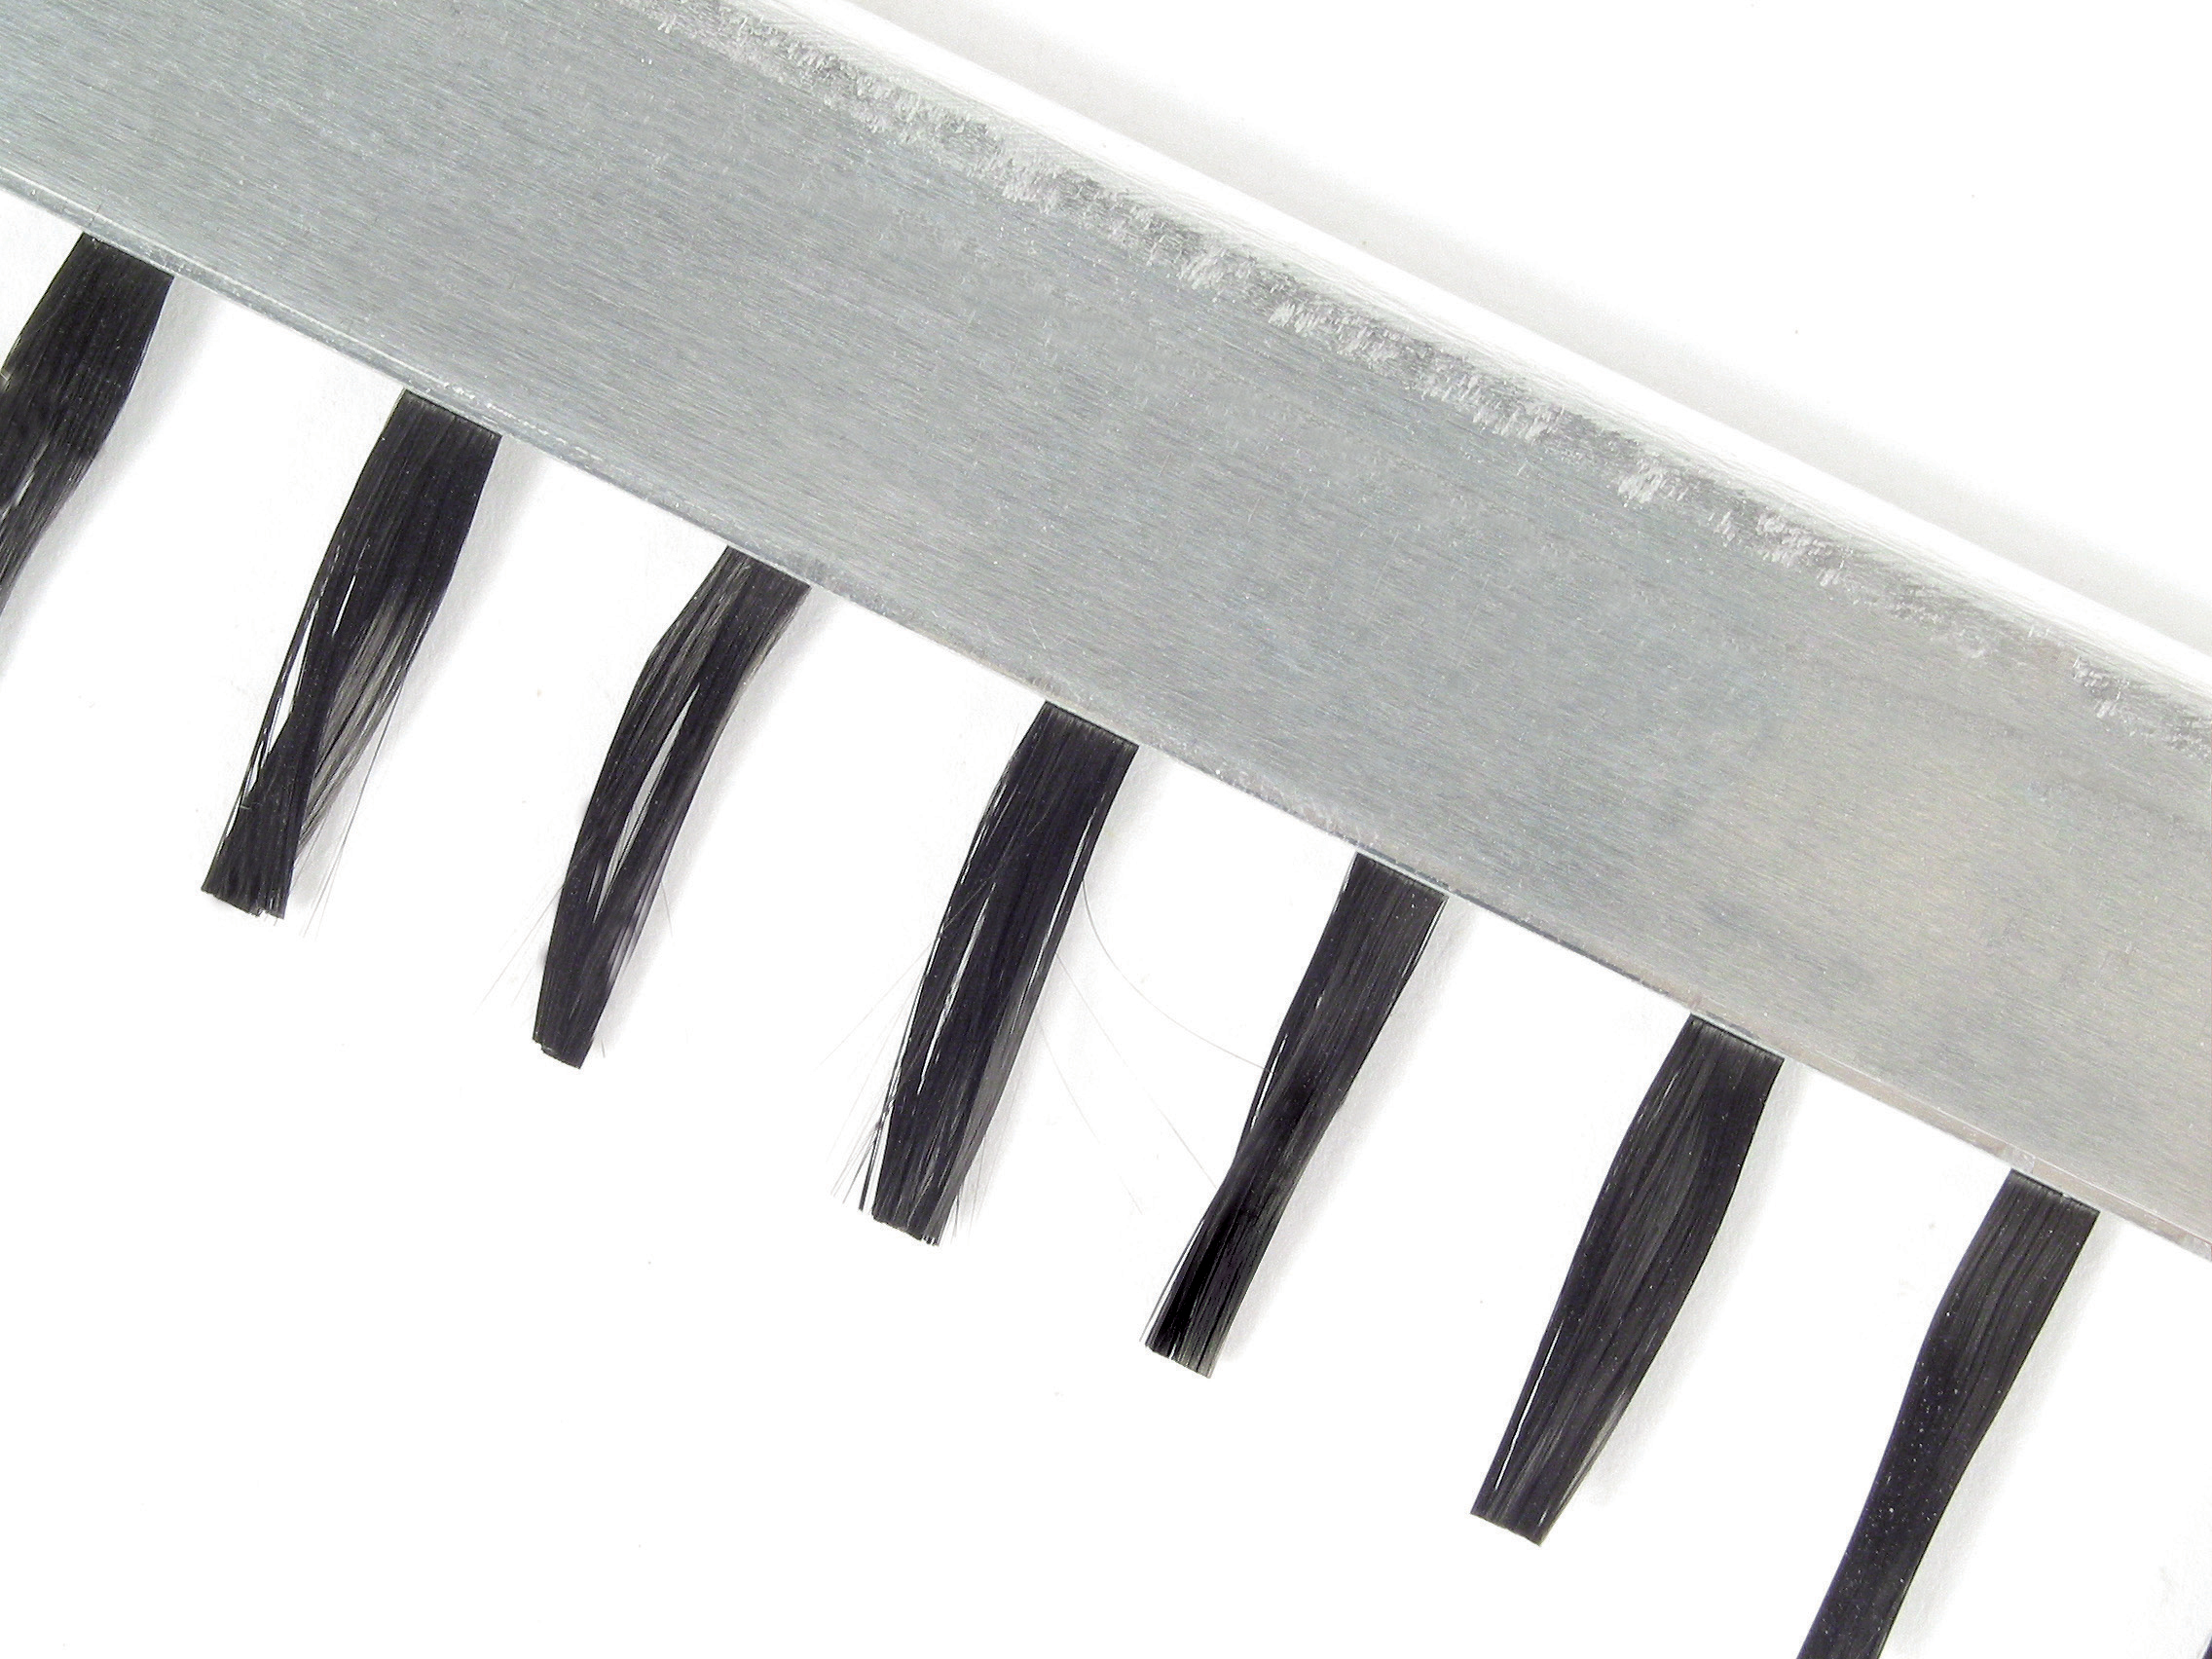 Antistatic brush - For sensitive surfaces - Carbon fibre bristles - 